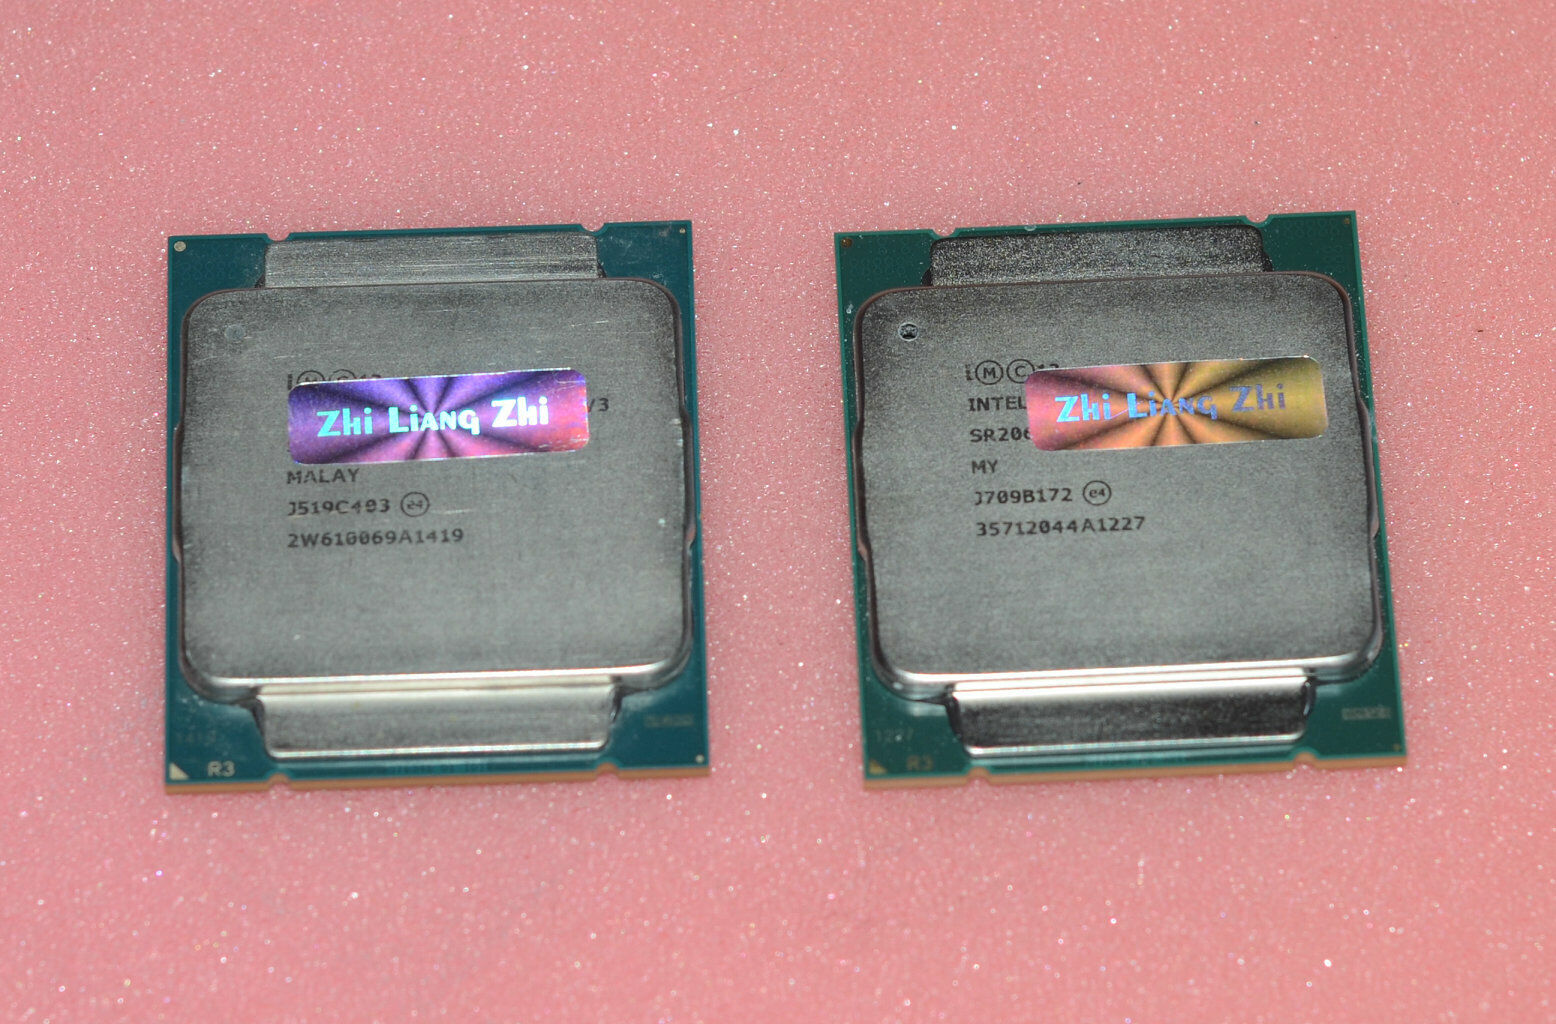 Matching pair Intel Xeon CPU E5-1620 V3 Quad-Cores 3.5Ghz LGA2011 SR20P chipped